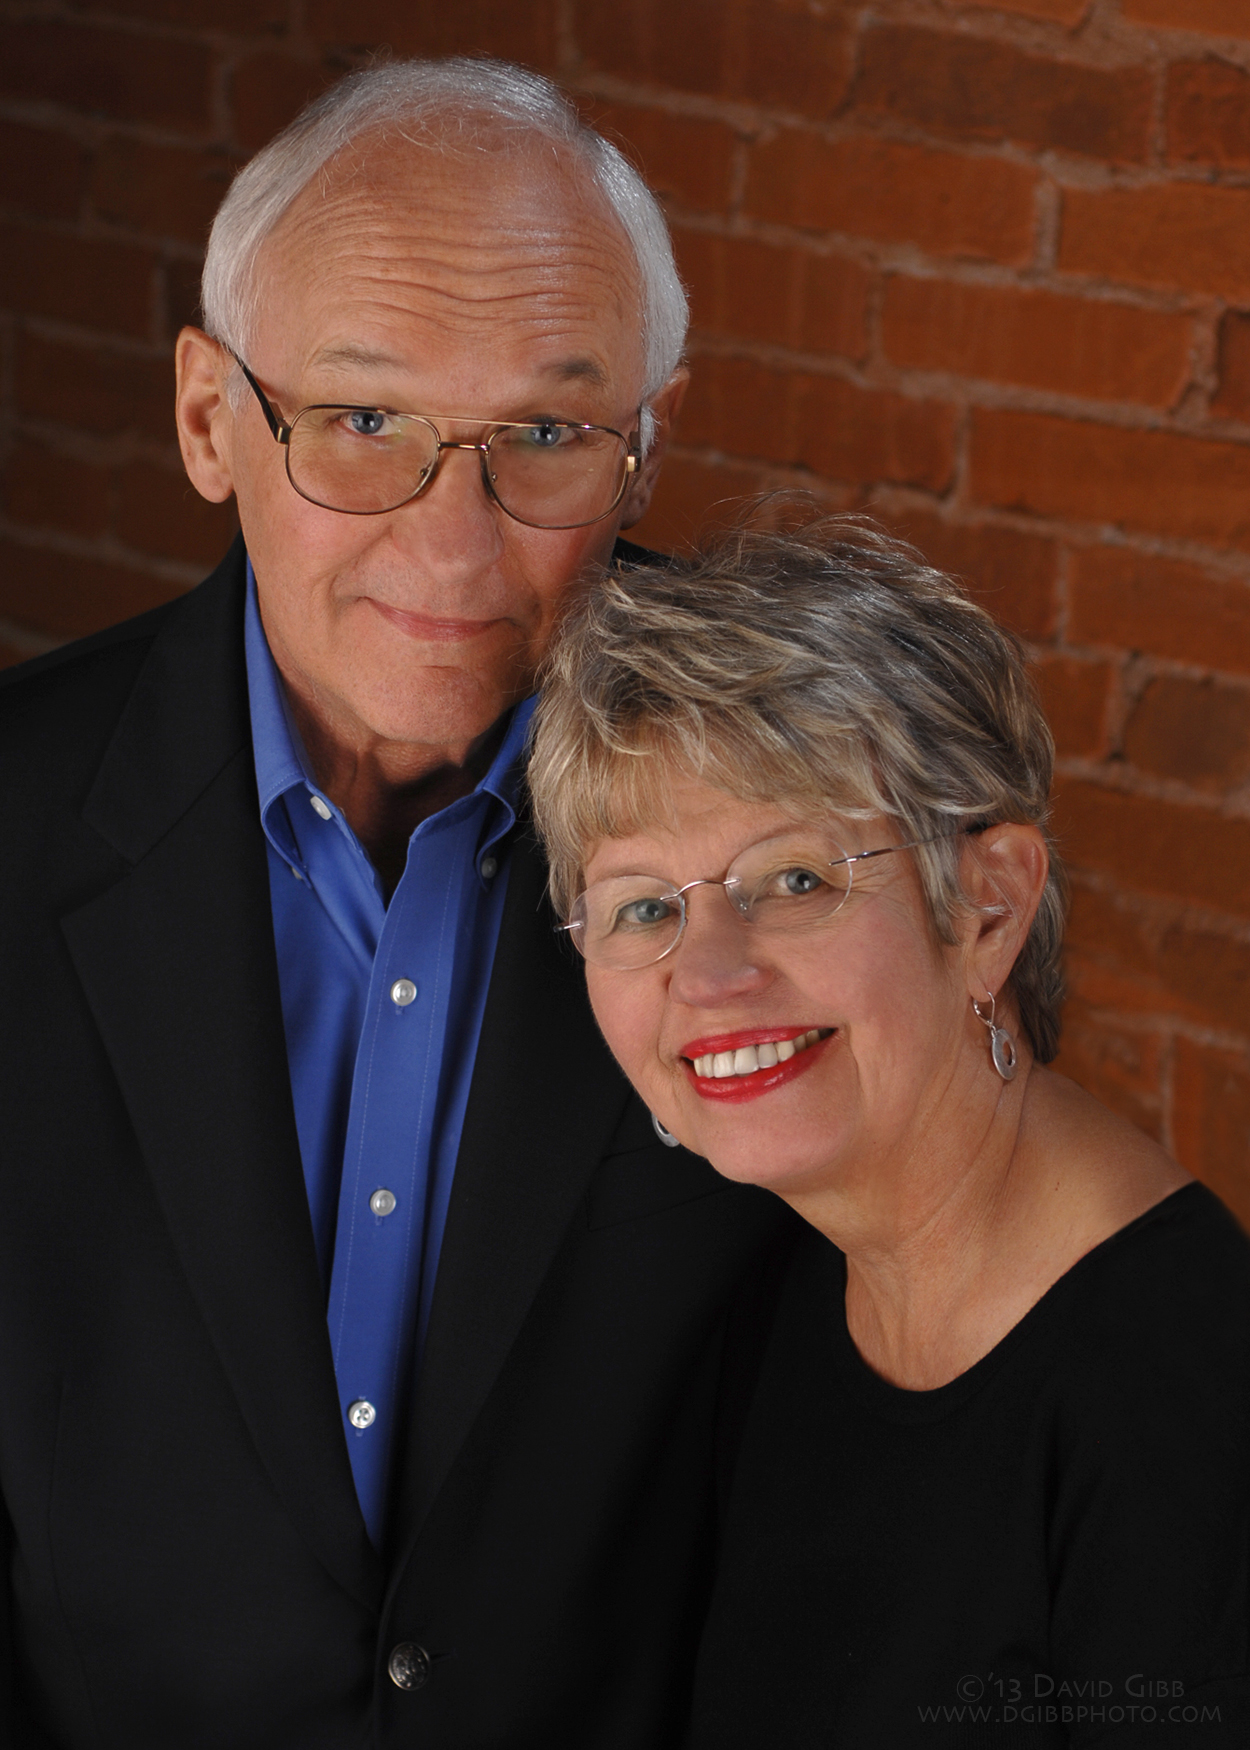 Howard and Sharon Johnson